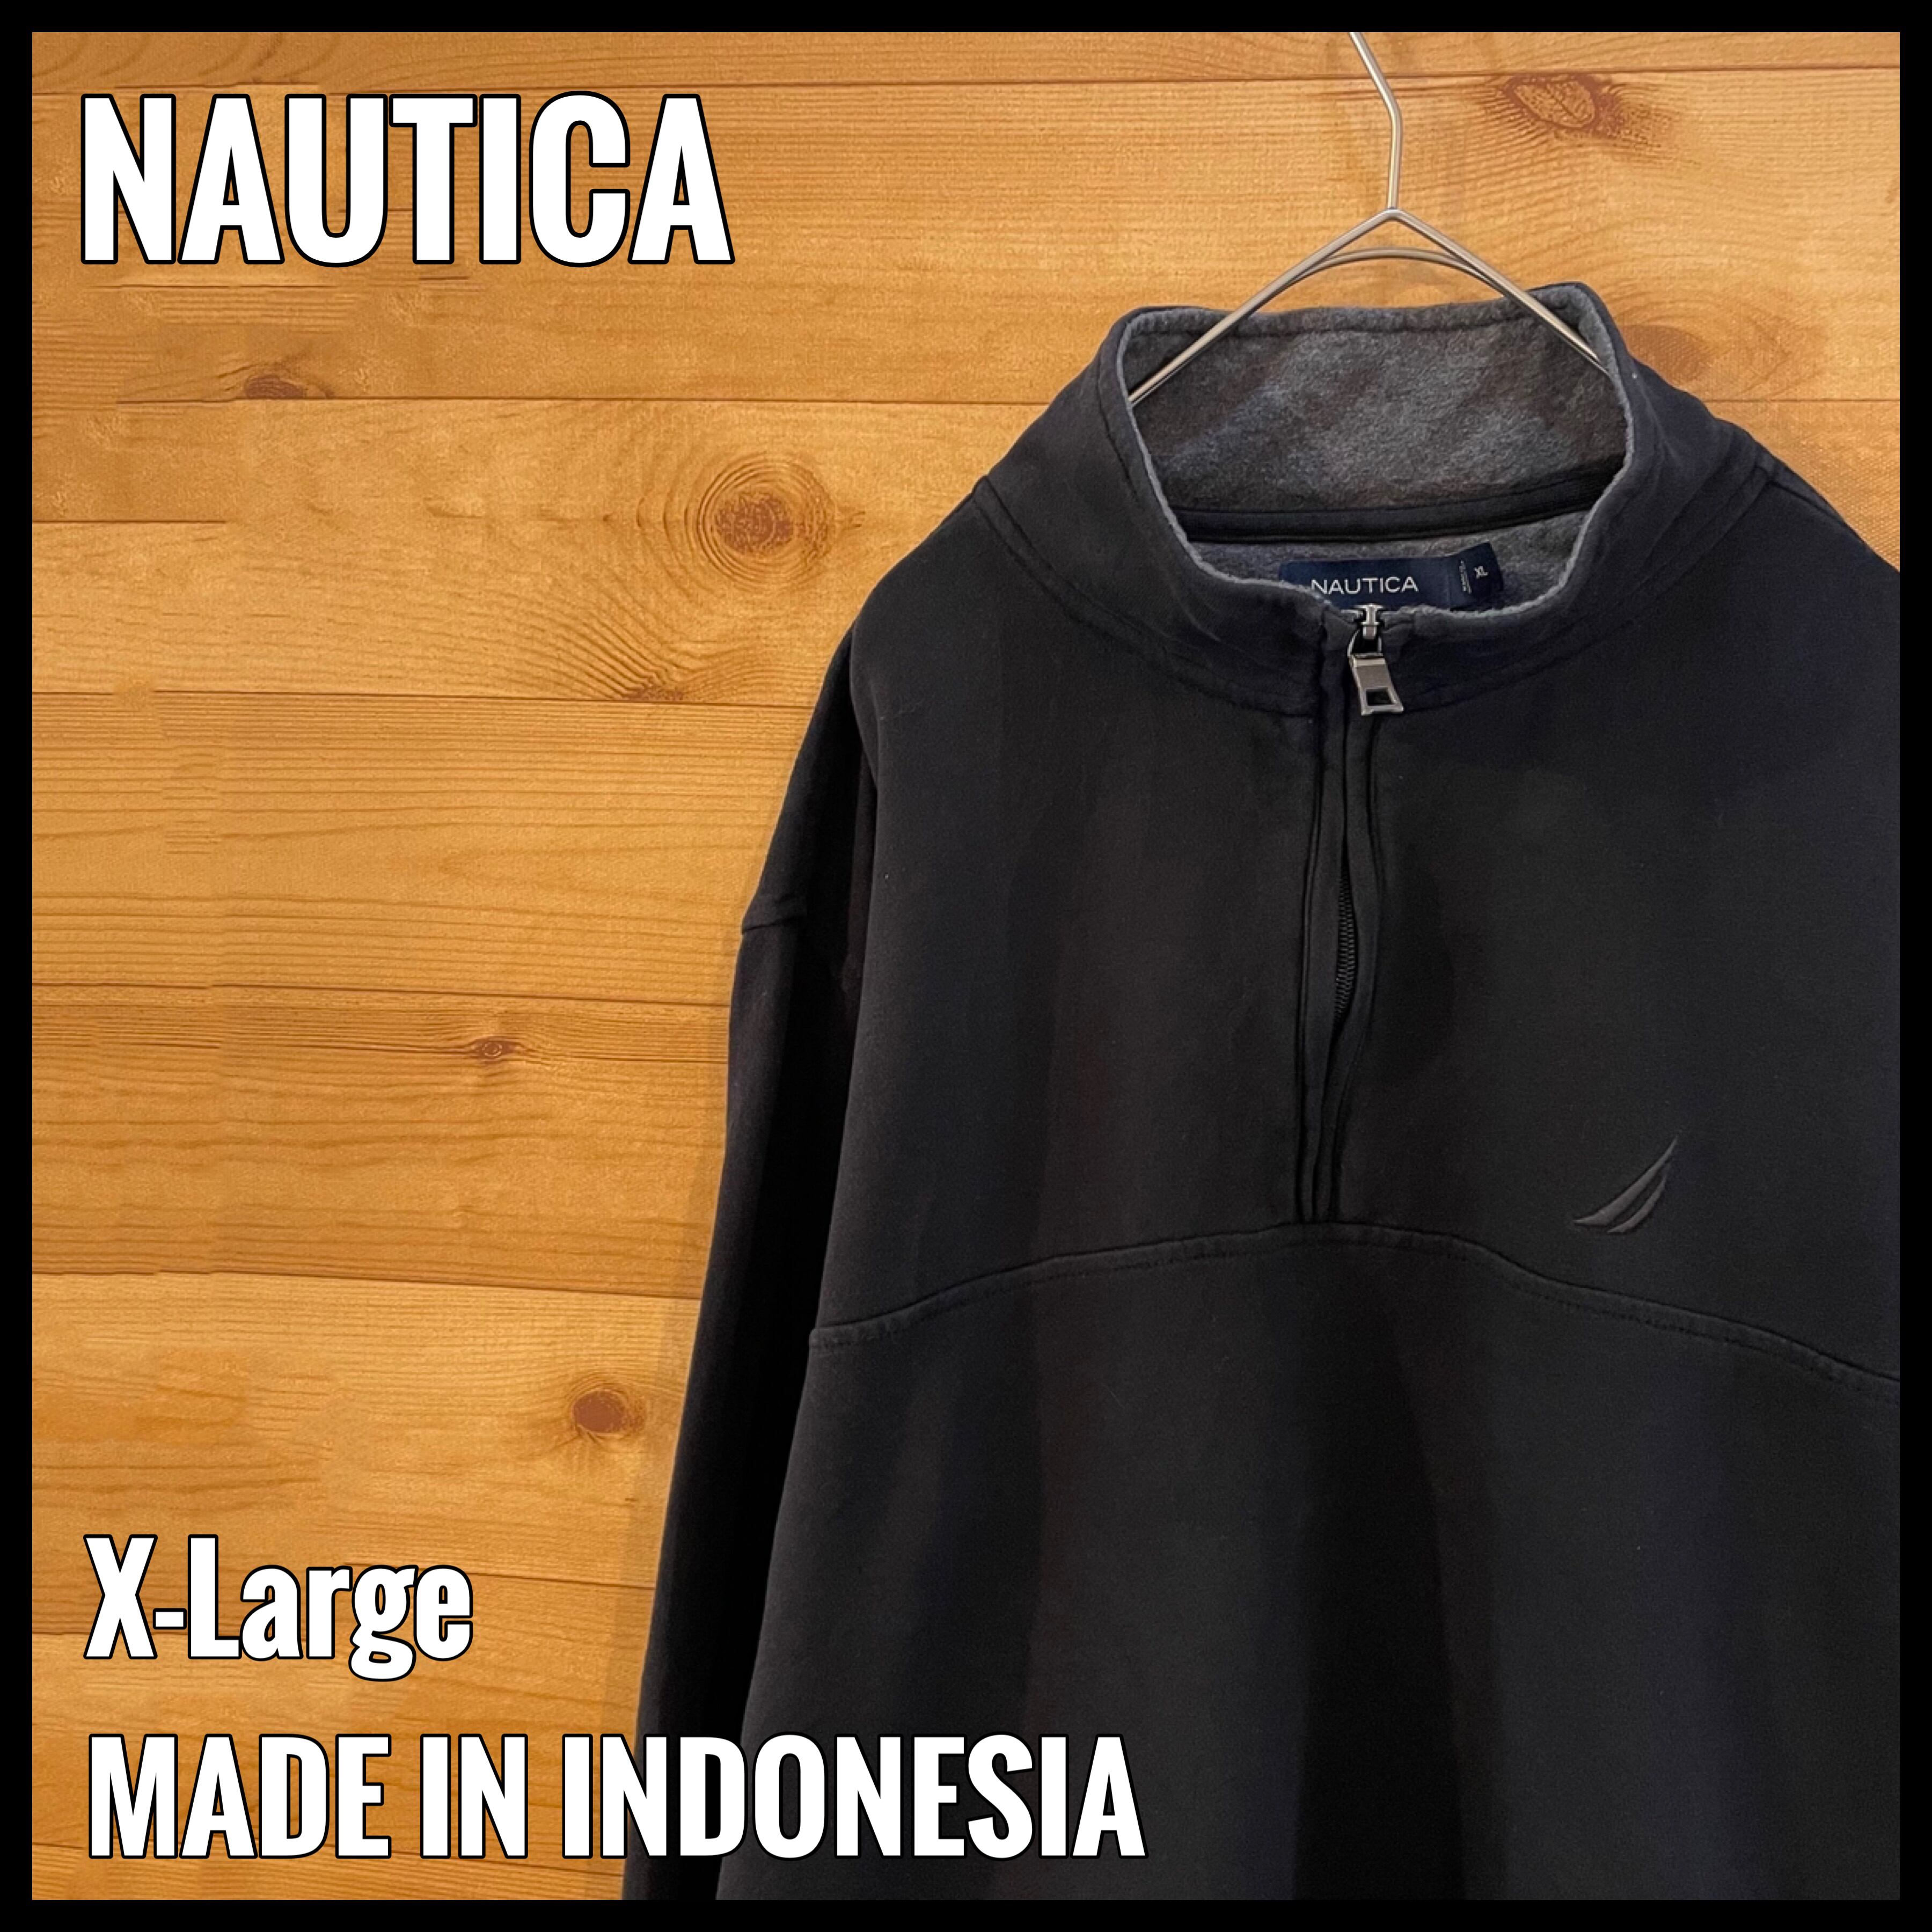 ノーティカ ハーフジップ刺繍ワンポイントロゴ スウェットトレーナー黒ブラック長袖